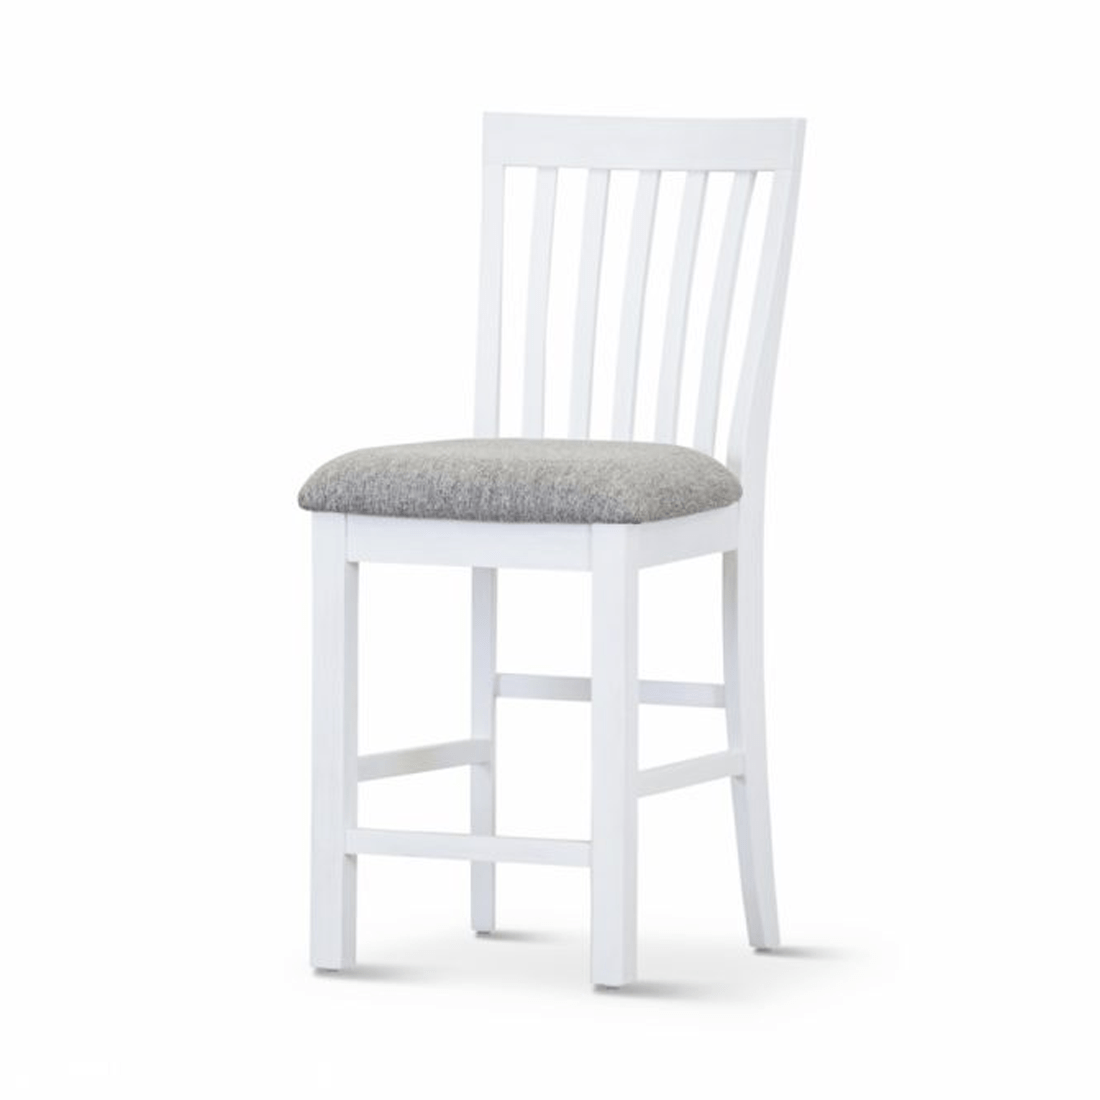 Coastal Bar Chair White